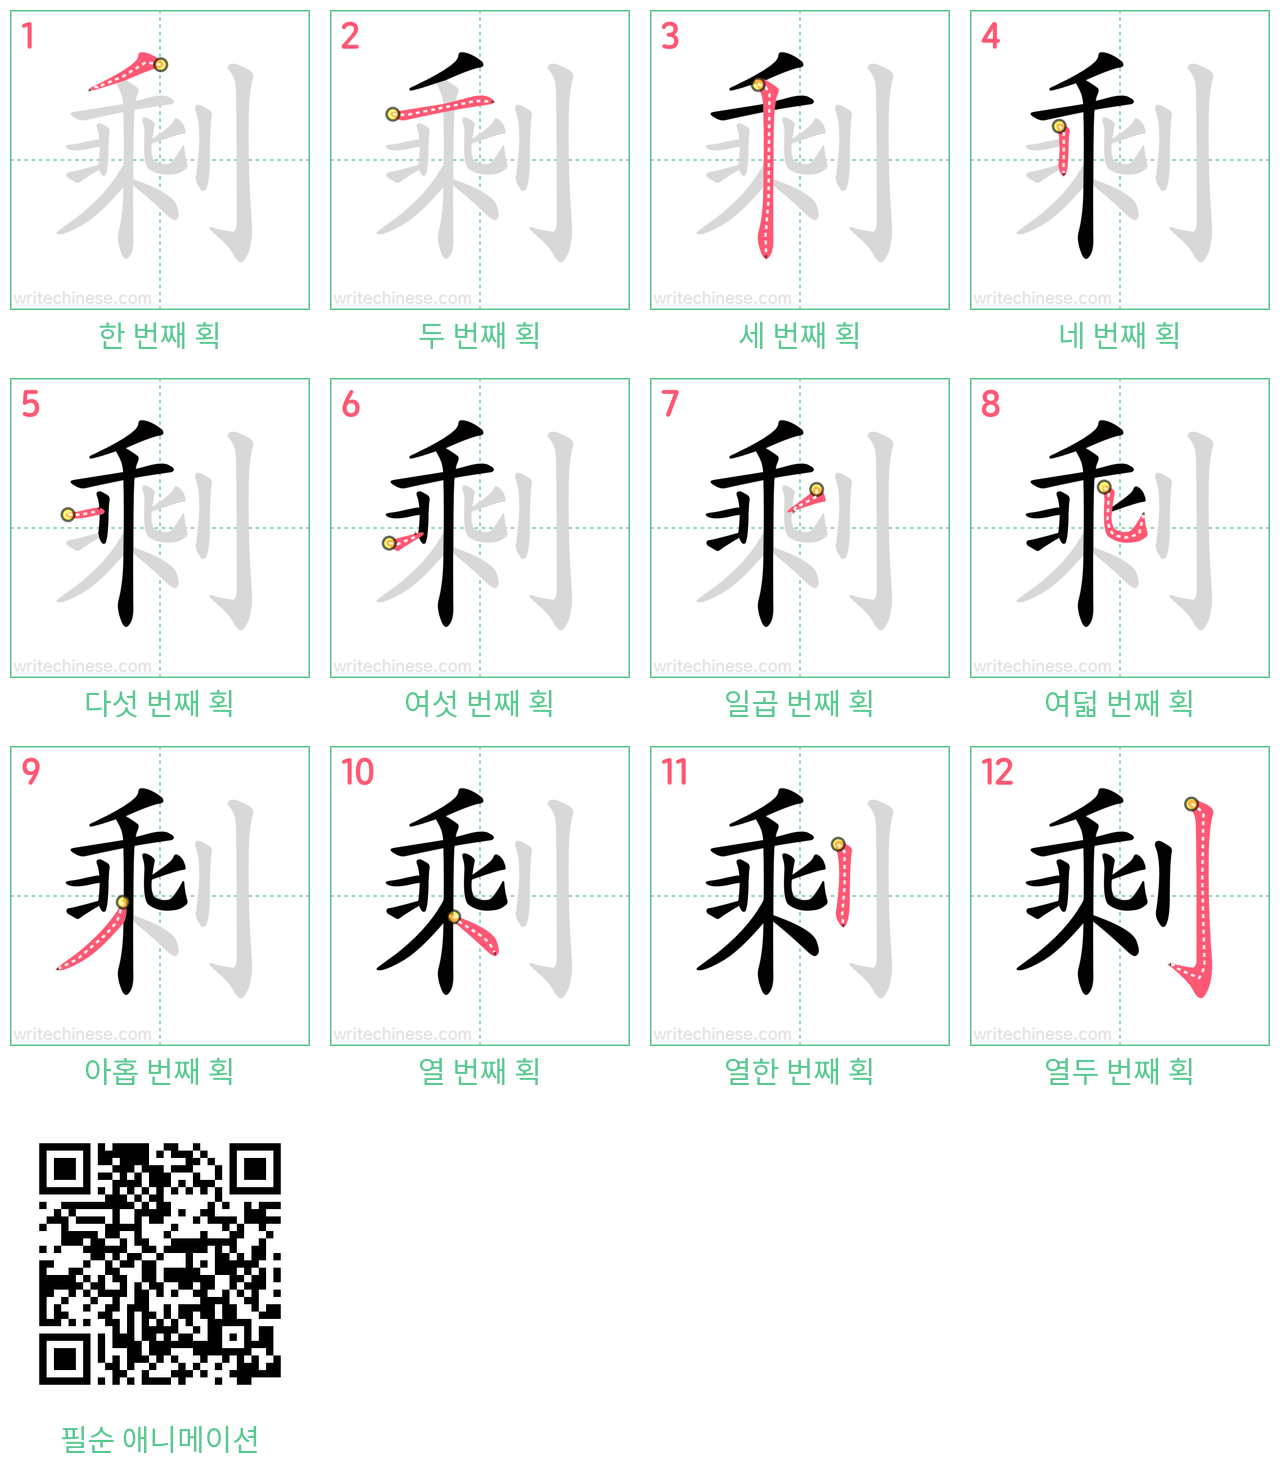 剩 step-by-step stroke order diagrams